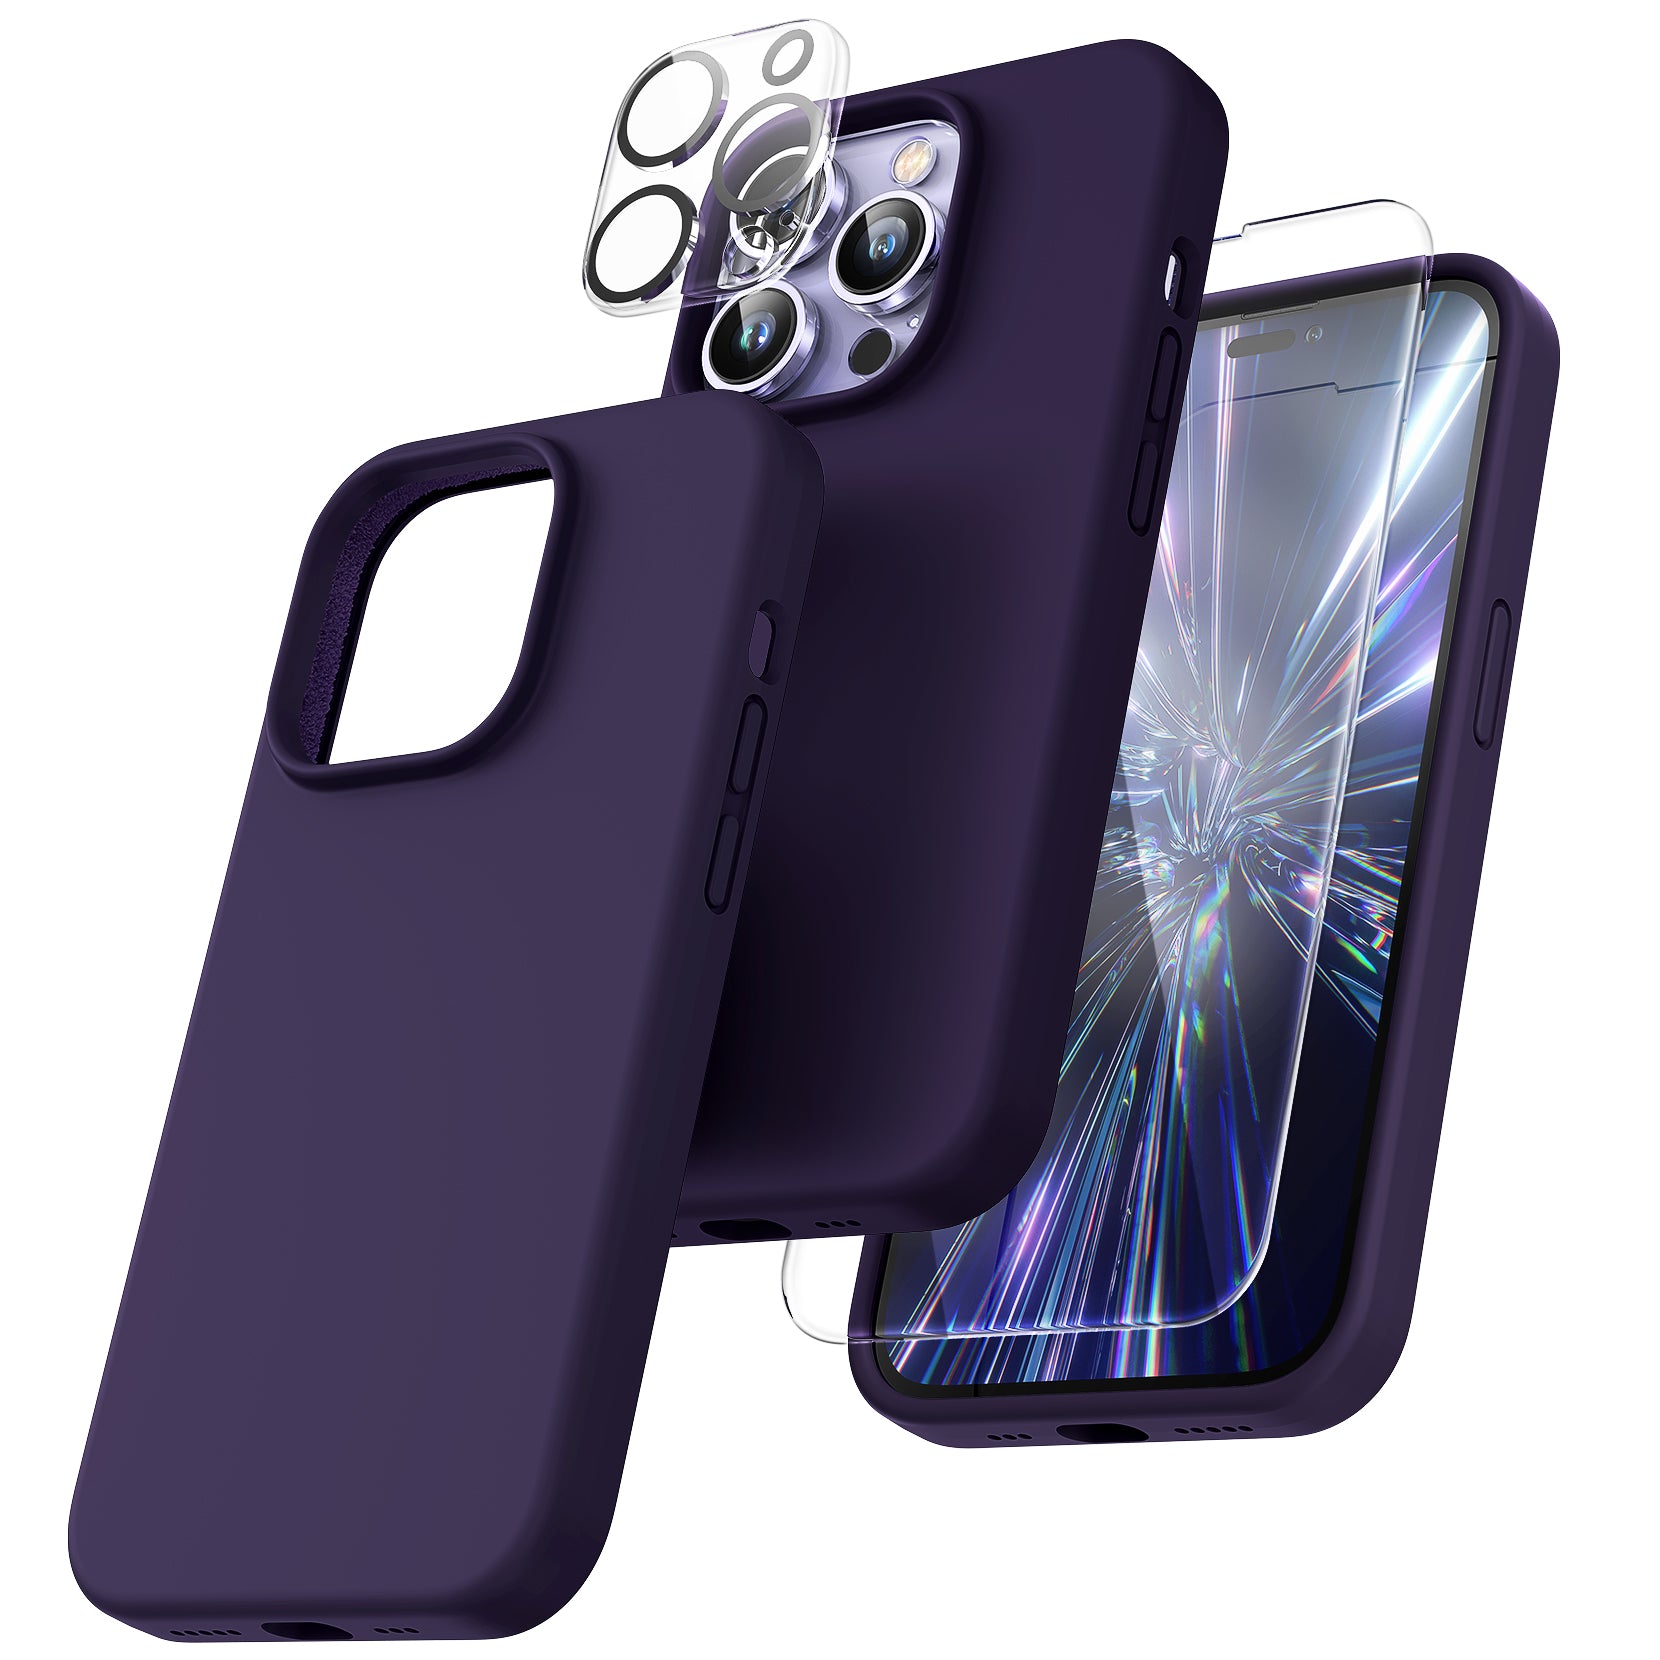 iPhone 14 Pro Case Silicone [14 Colors] – elago